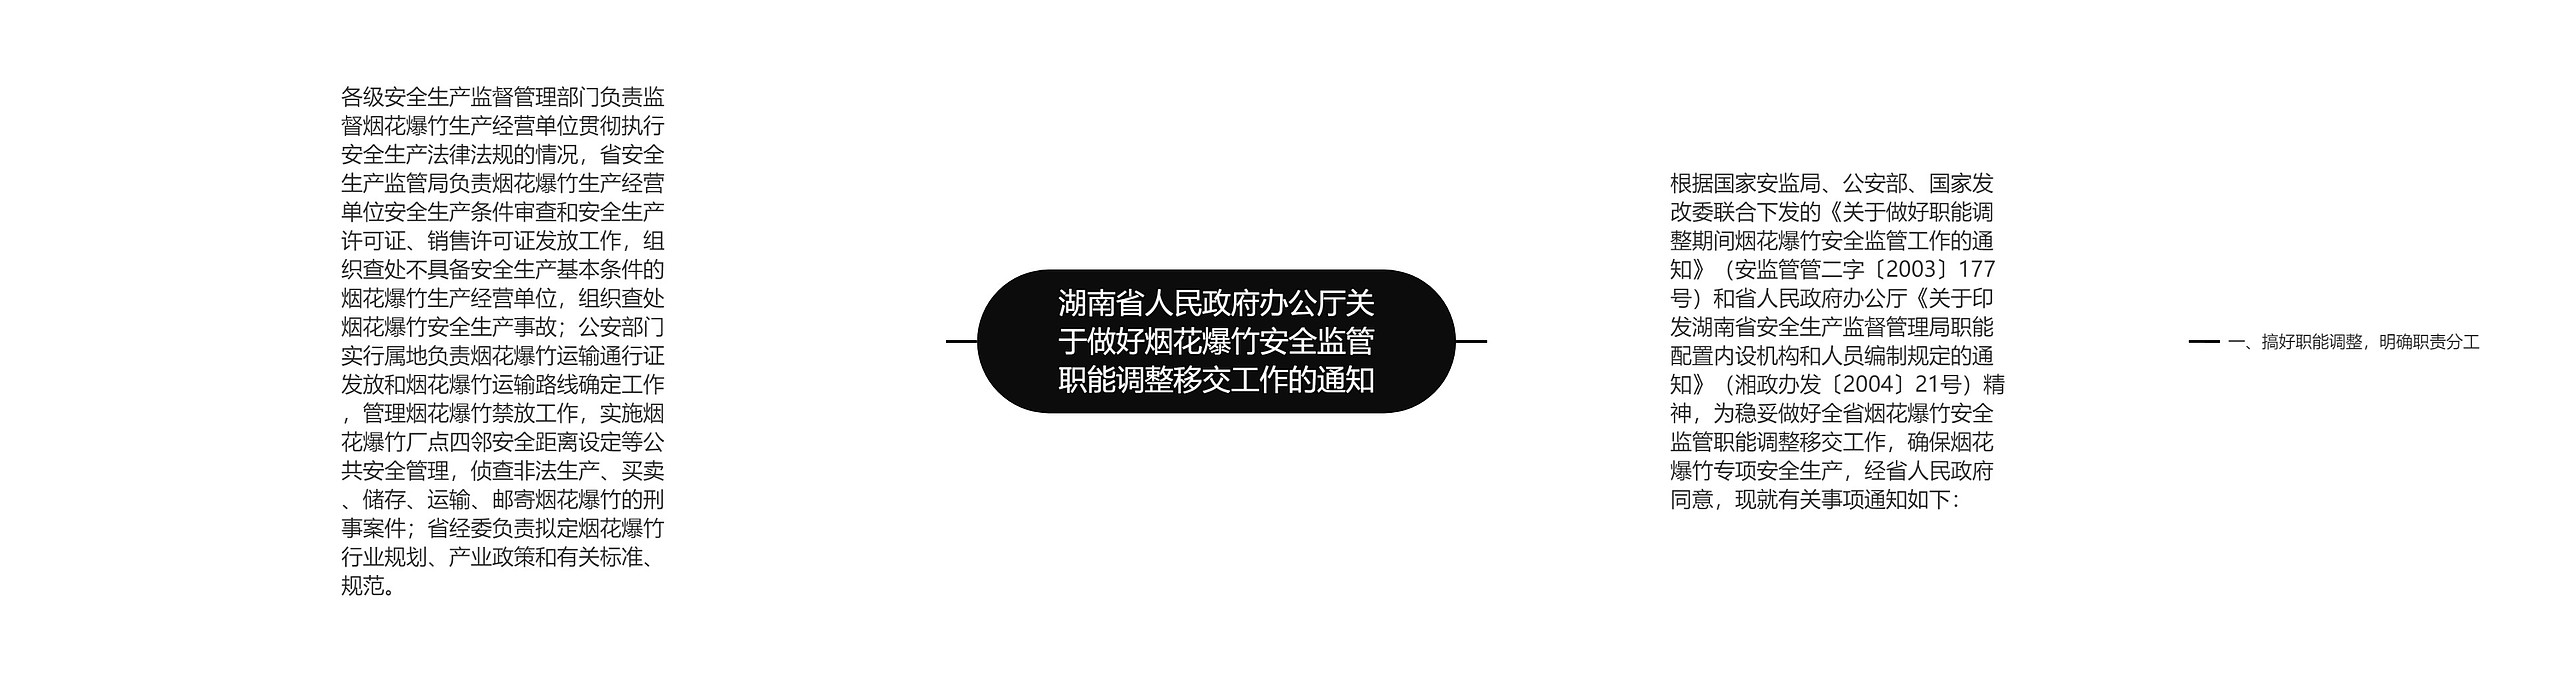 湖南省人民政府办公厅关于做好烟花爆竹安全监管职能调整移交工作的通知思维导图